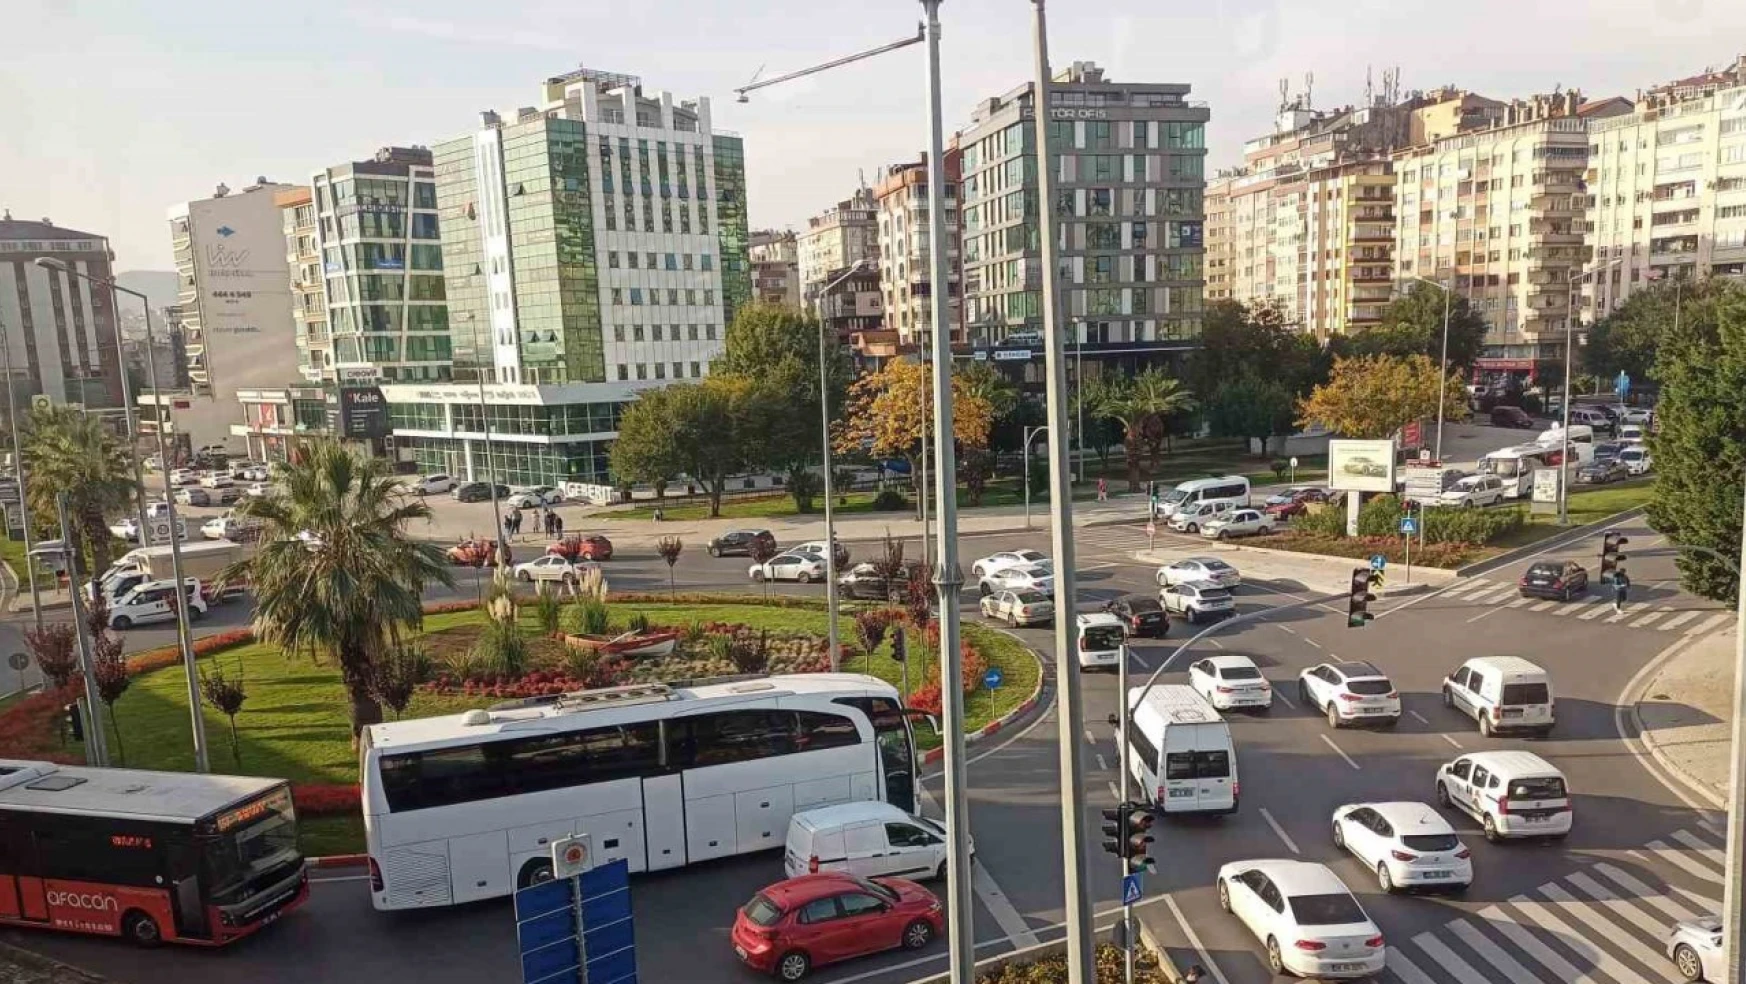 Samsun'da trafiğe kayıtlı taşıt sayısı 447 bini geçti